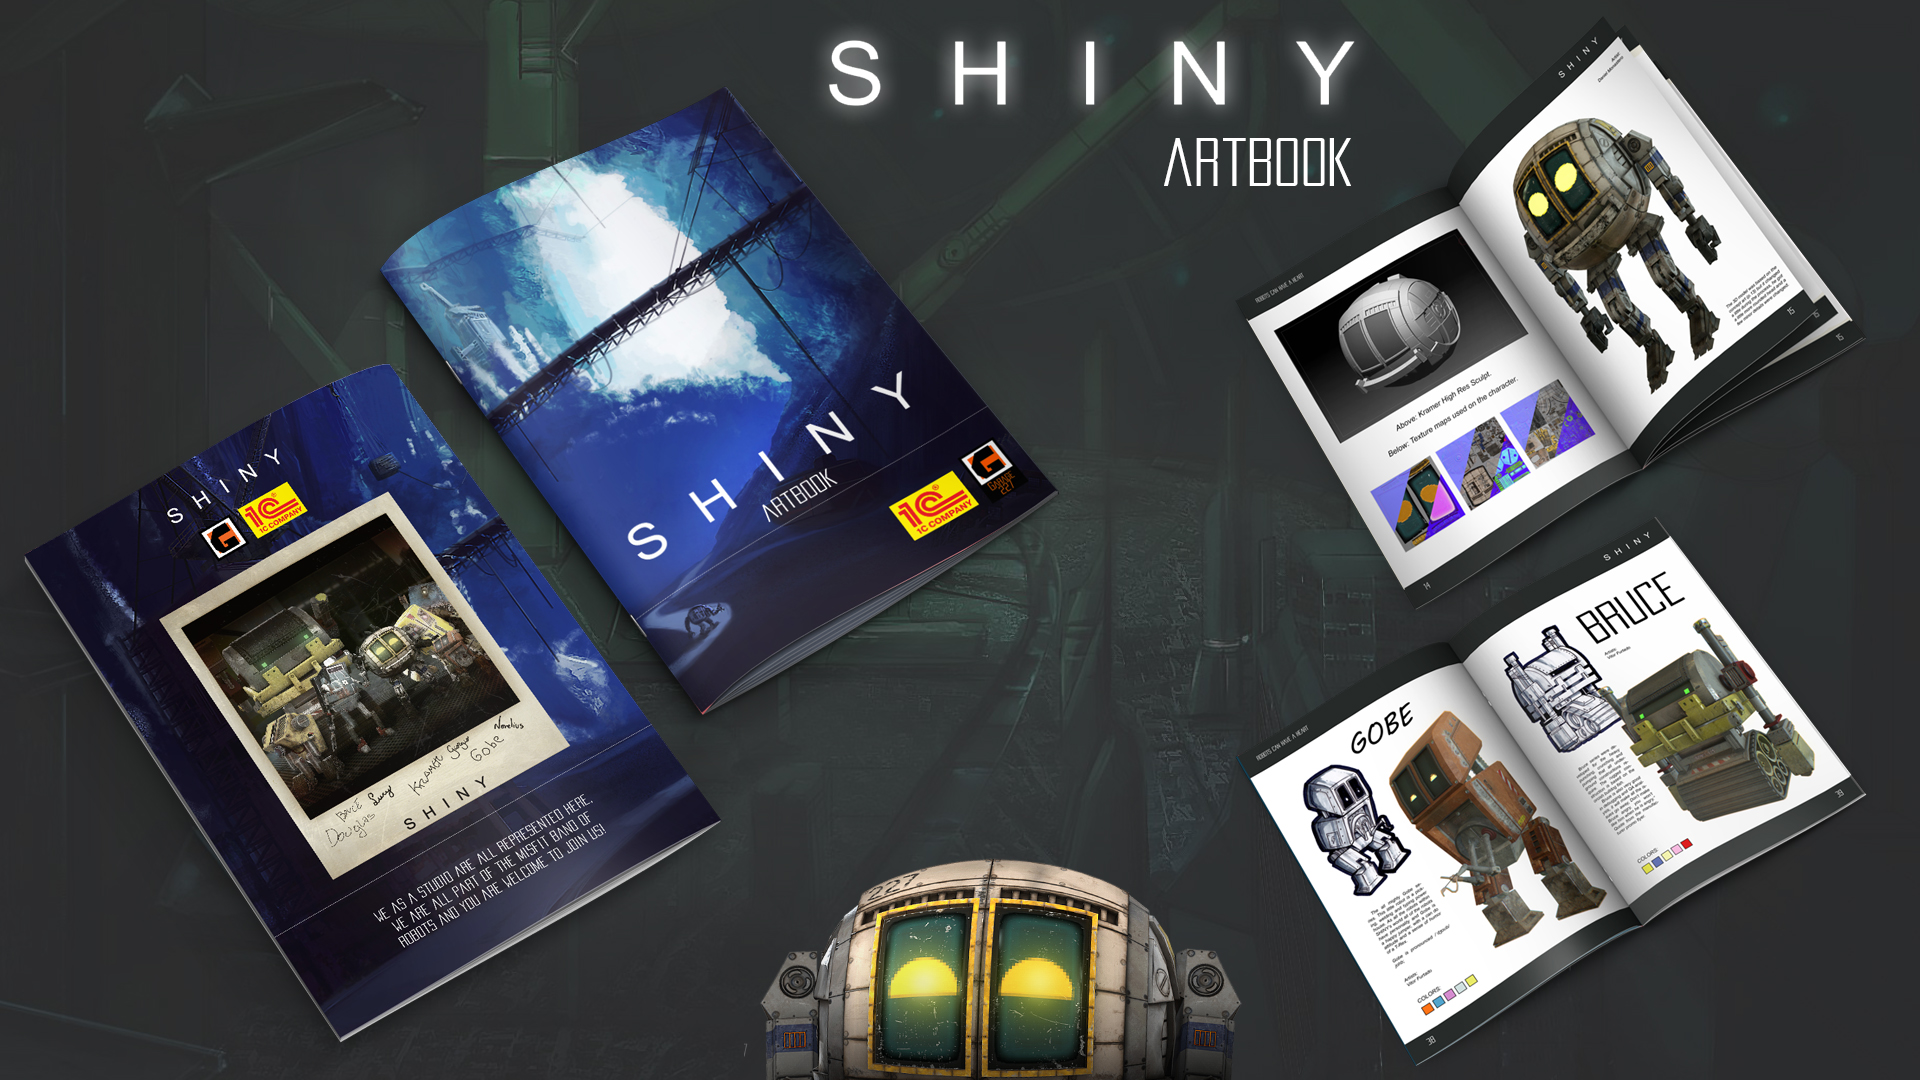 Shiny - Digital Artbook DLC Steam CD Key 3.69 $